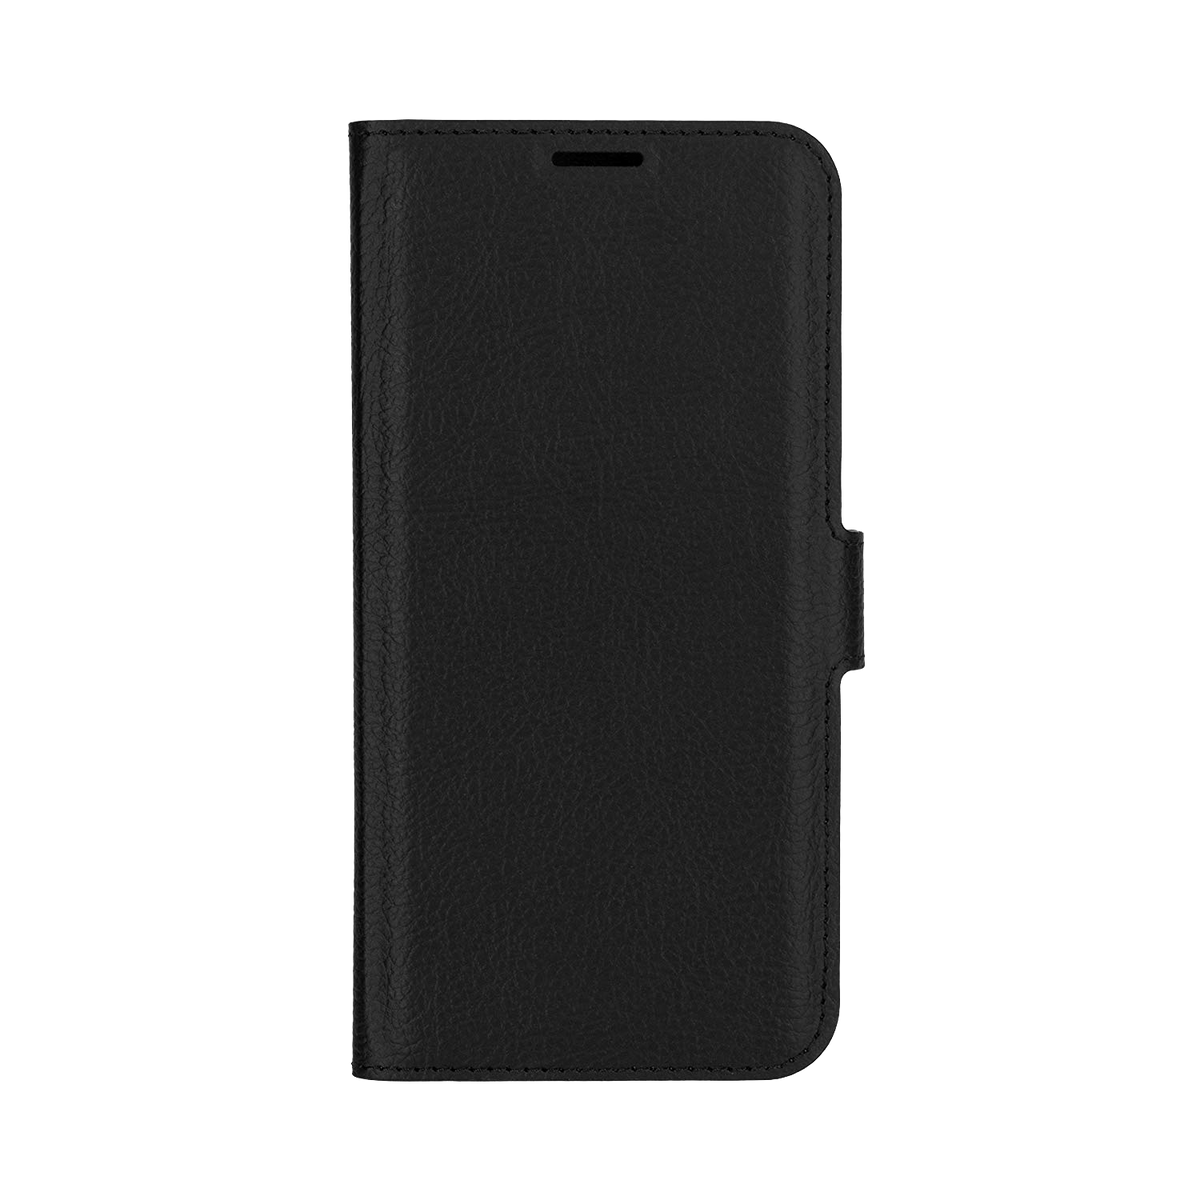 Xqisit Slim Wallet Selection Hülle Case Für Samsung Galaxy S7 Schwarz Black - Onhe Vertrag